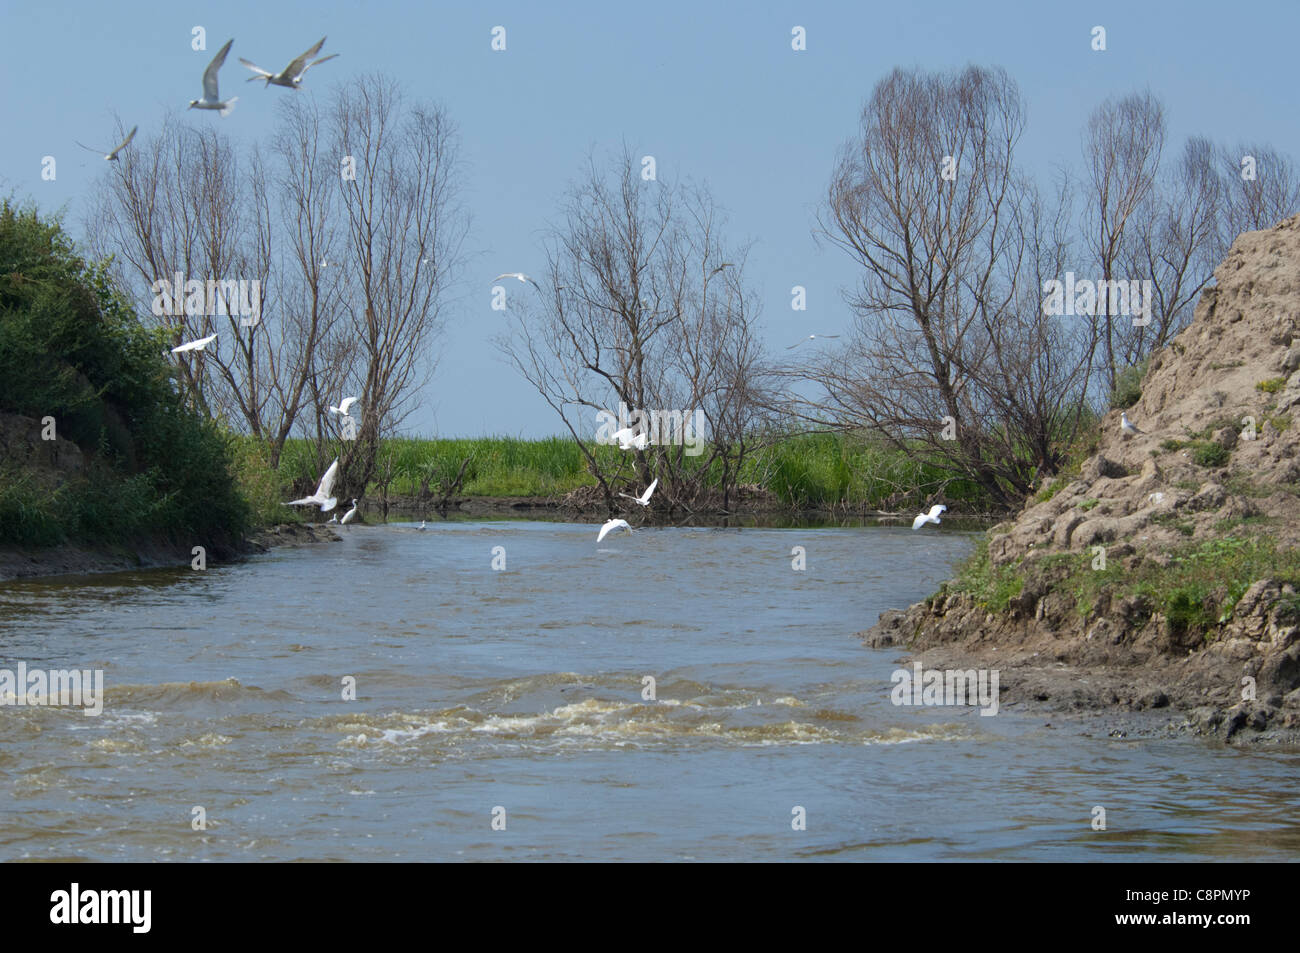 Romania, Dobrudgea region, Tulcea, Danube Delta. Sfantu Gheorghe, wetland bird habitat. UNESCO Biosphere Reserve. Stock Photo